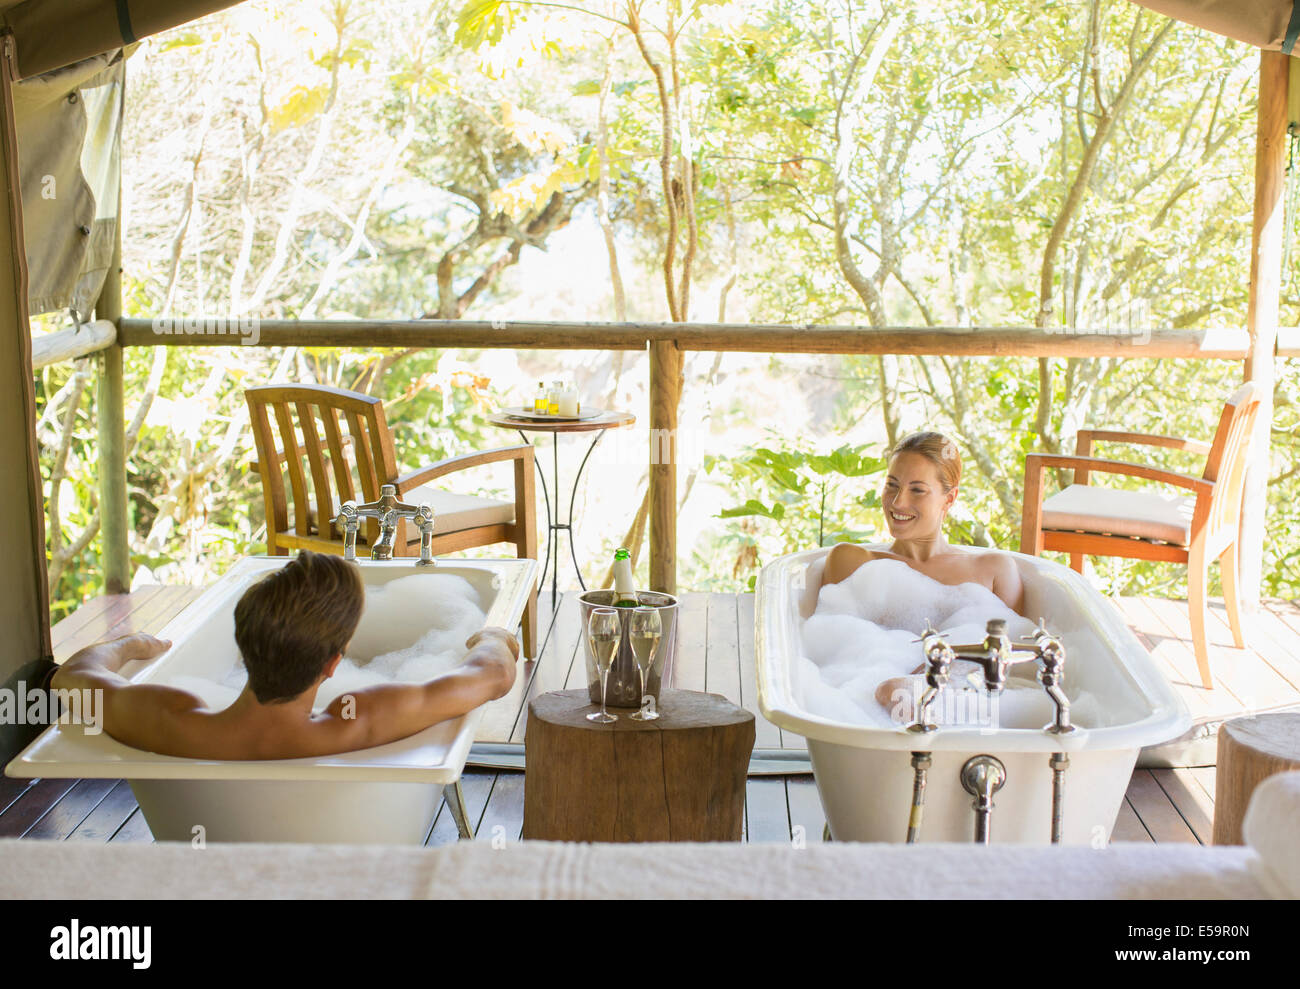 Paar in zwei Badewannen in outdoor-spa Stockfoto